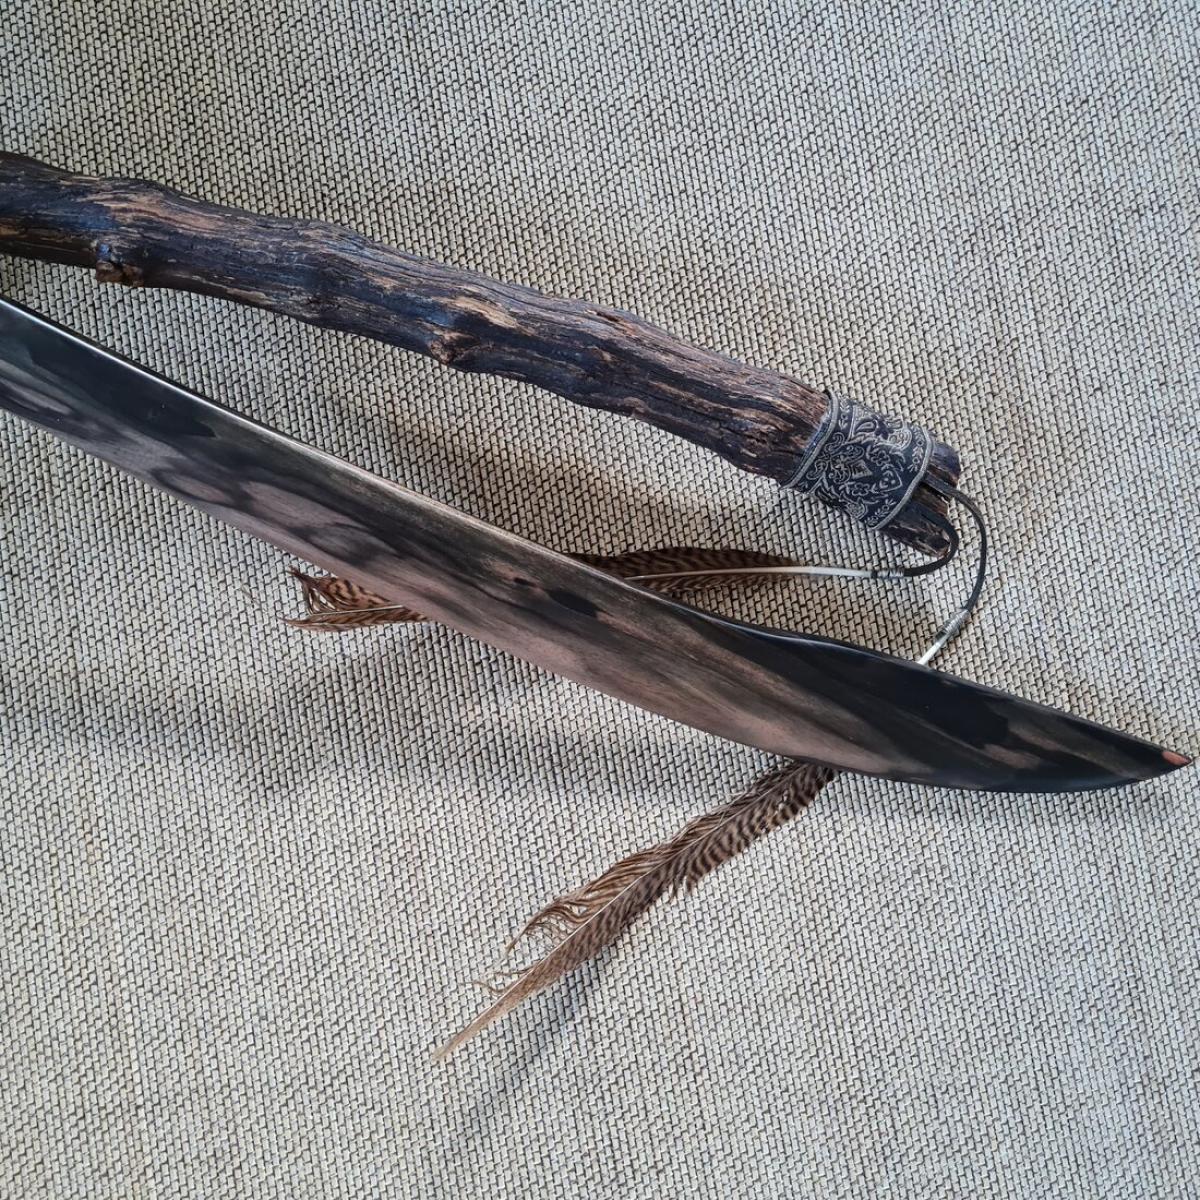 Ebony Tai Chi Saber - Blade length 65 cm ► www.bokken-shop.de ✅ Wooden sword for Tai Chi ✓ Tai Chi Chuan ✓ Taichi ✓ Your Tai Chi dealer!